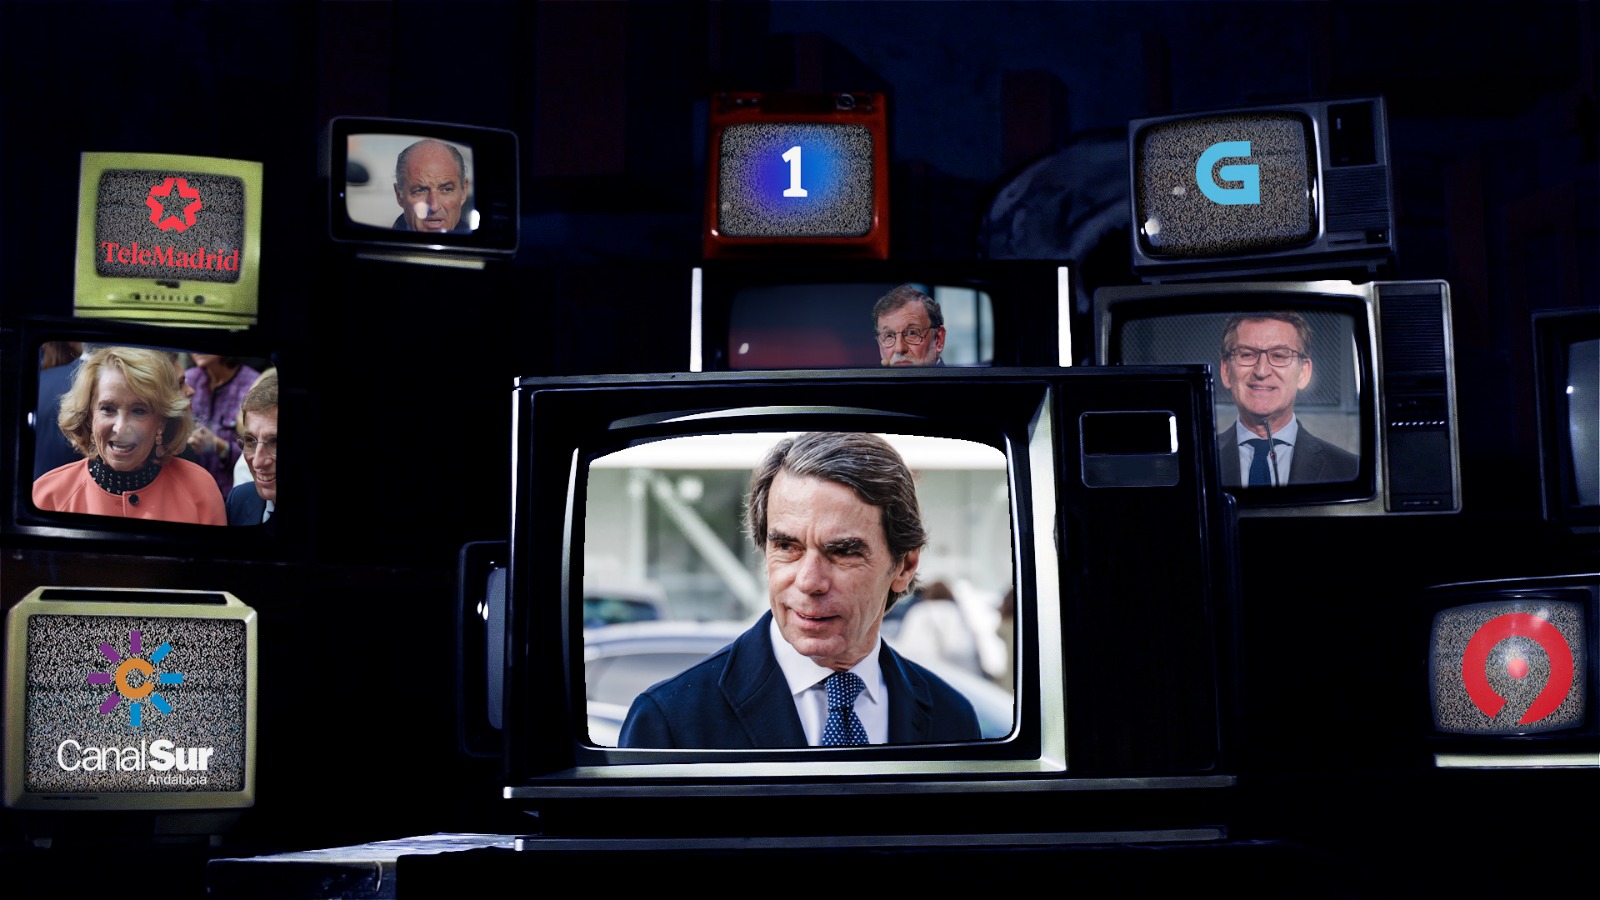 El PP y las televisiones públicas: pasado y presente de un control sistemático. Elaboración propia